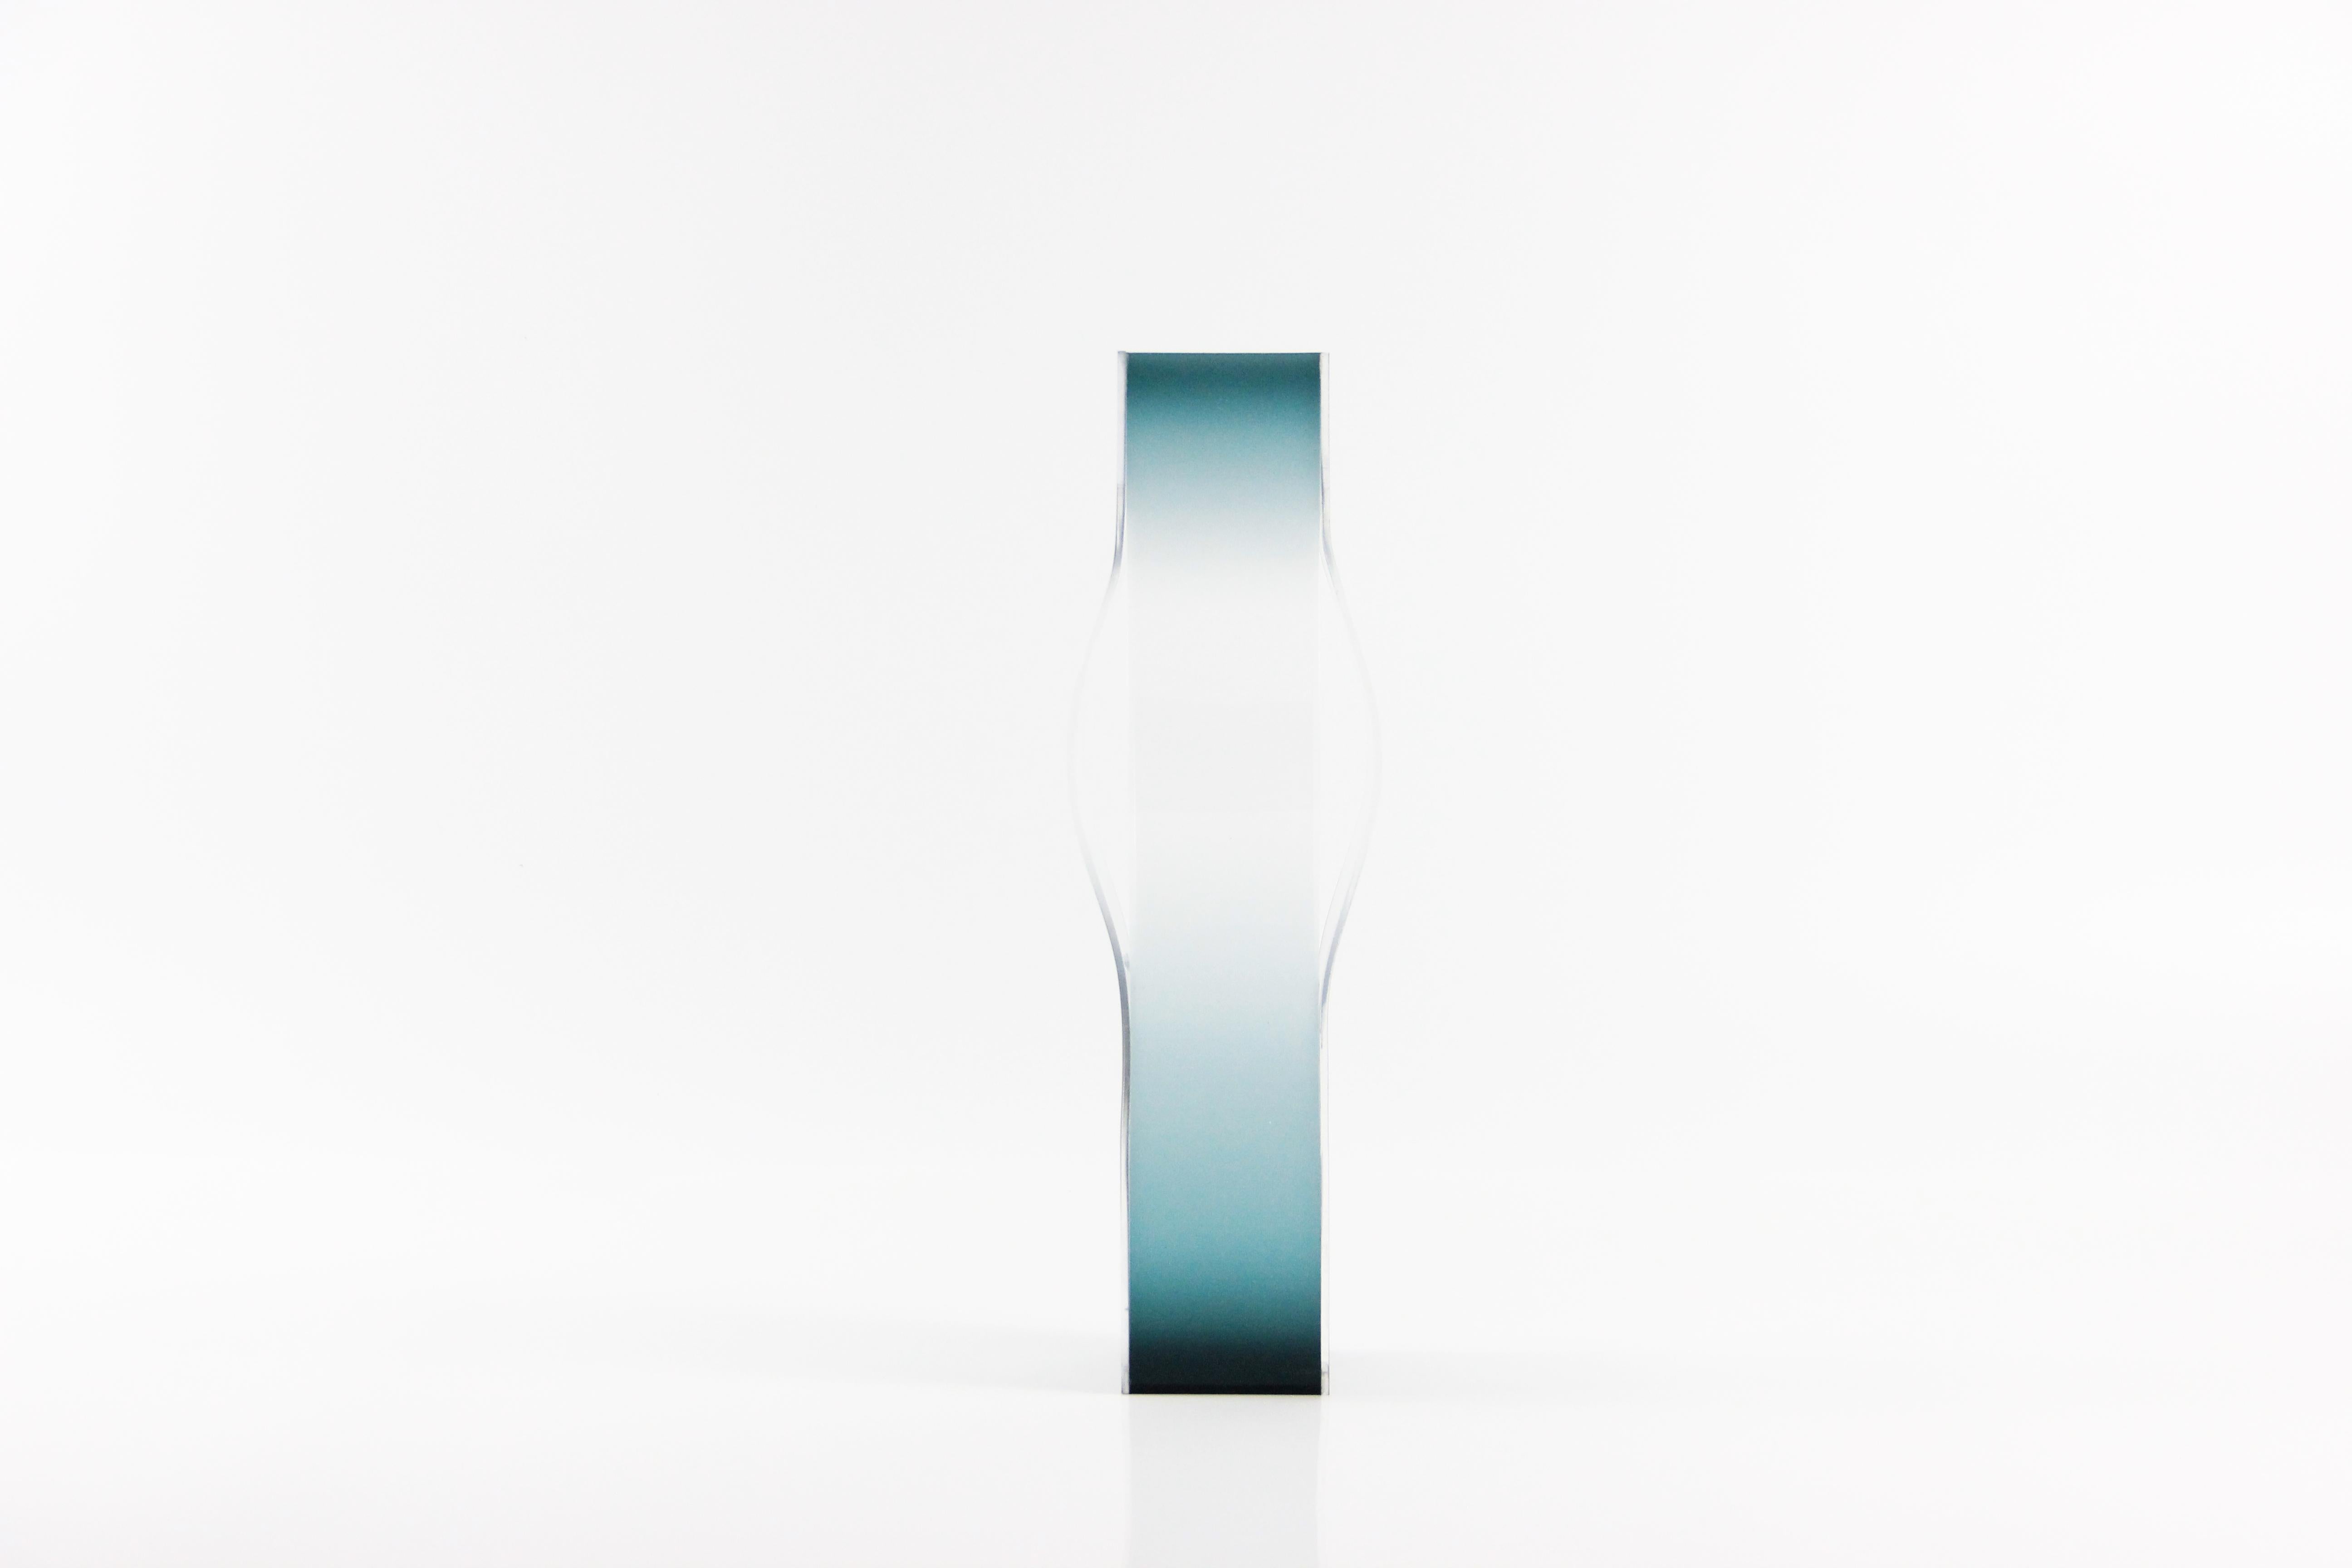 Stretch color ist eine Reihe von lokalen verschwindenden Vasen. Die drei großen Vasen zeigen die Stärke und Veränderung der Farbe, nachdem sie im Raum gedehnt wurde.
Durch die Form der Kurve und den Farbverlauf verleiht der Designer der Vase ein